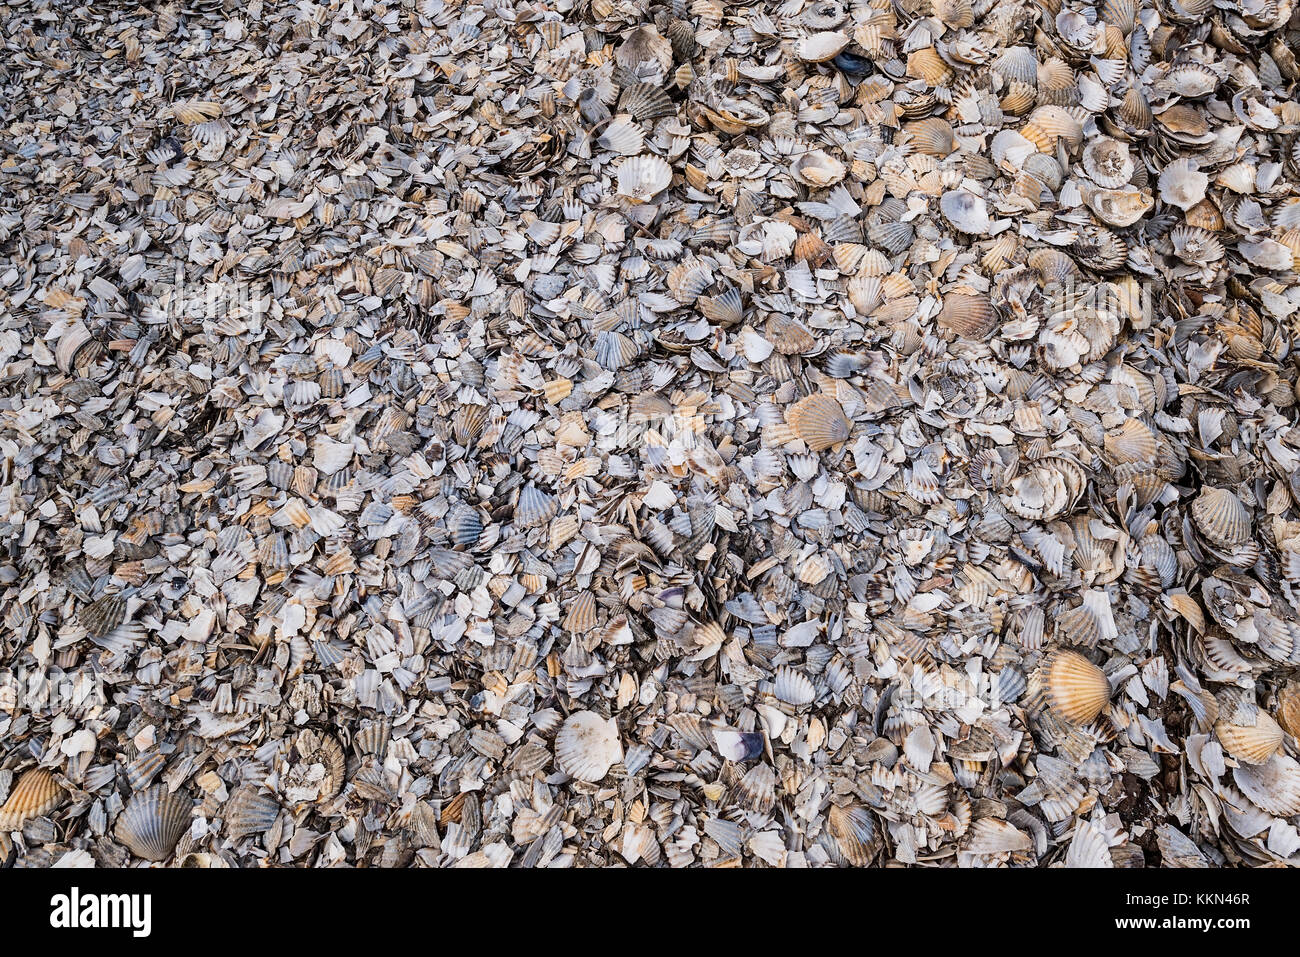 Tausende von kleinen Muscheln am Strand angespült. Stockfoto